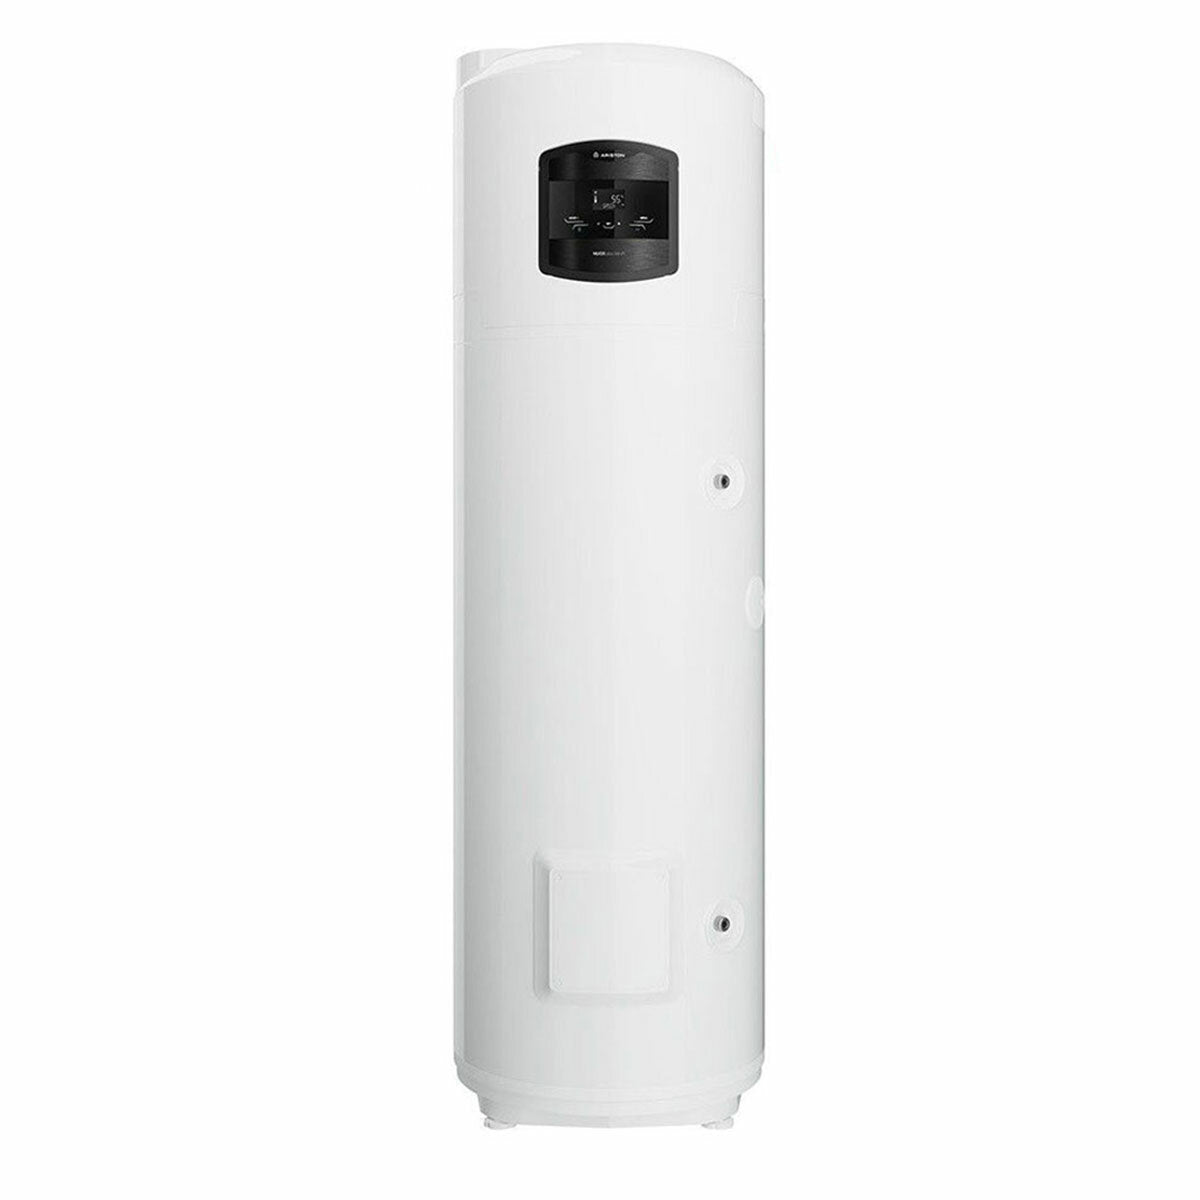 Chauffe-eau pompe à chaleur Ariston Nuos PLUS Wi-Fi 200 litres A+